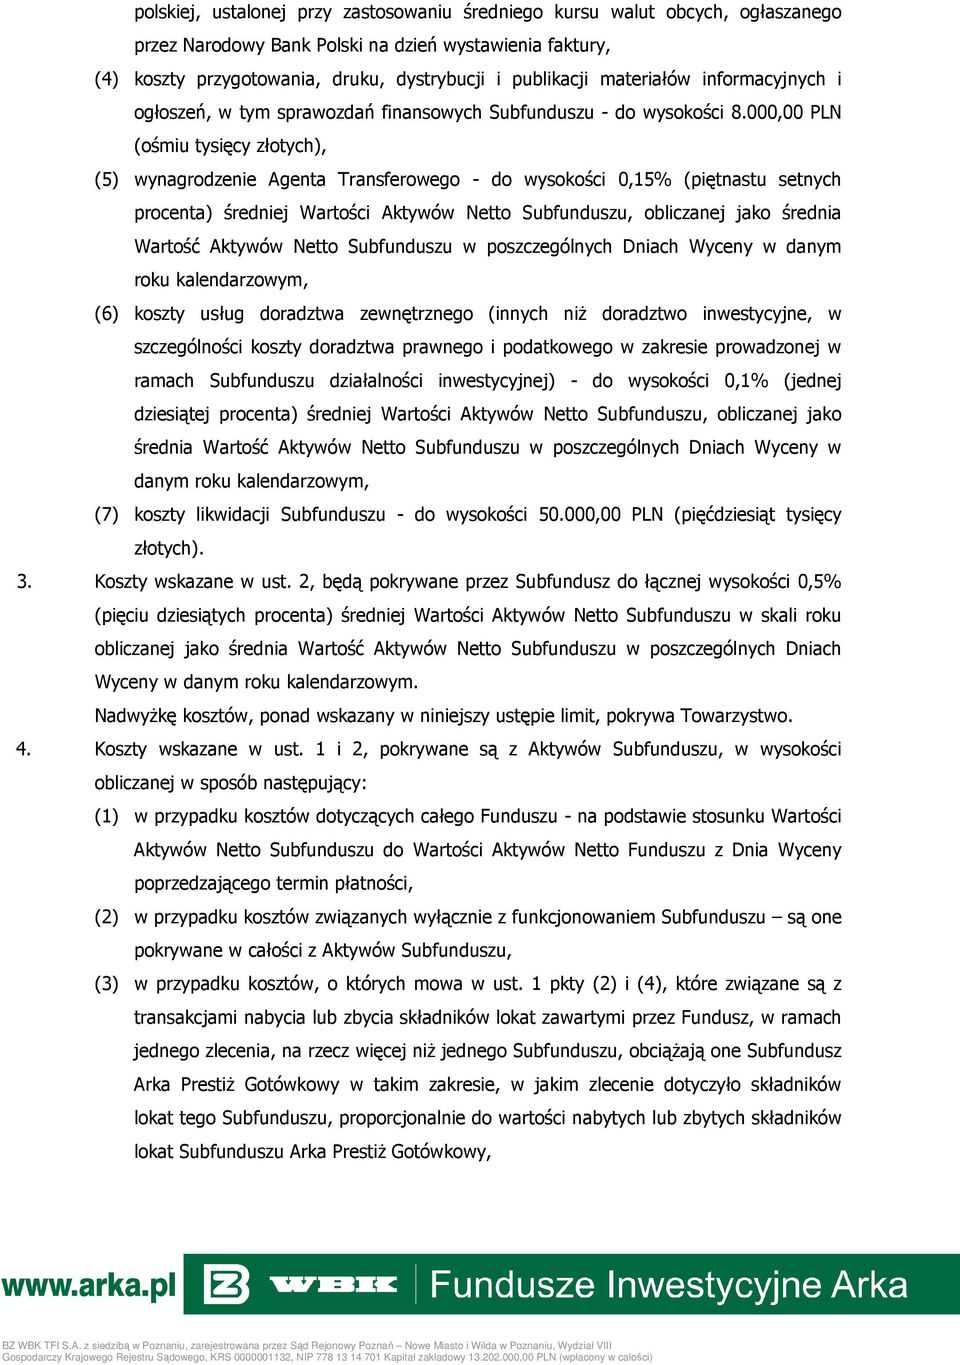 000,00 PLN (ośmiu tysięcy złotych), (5) wynagrodzenie Agenta Transferowego - do wysokości 0,15% (piętnastu setnych procenta) średniej Wartości Aktywów Netto Subfunduszu, obliczanej jako średnia